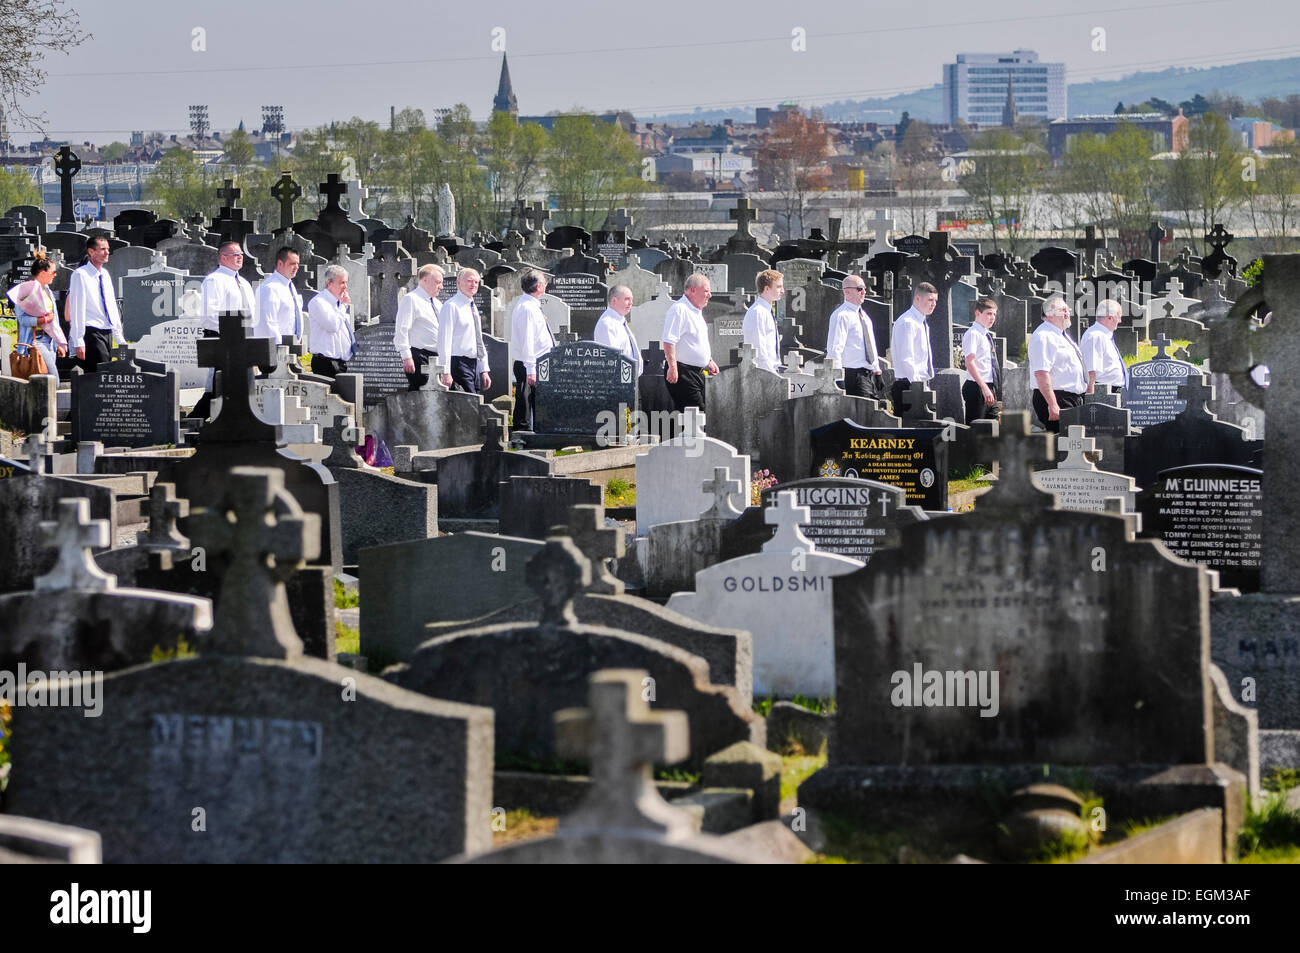 Belfast, Irlande du Nord. 20 Apr 2014 - une ligne d'hommes portant des chemises blanches font leur chemin à travers un cimetière. Banque D'Images